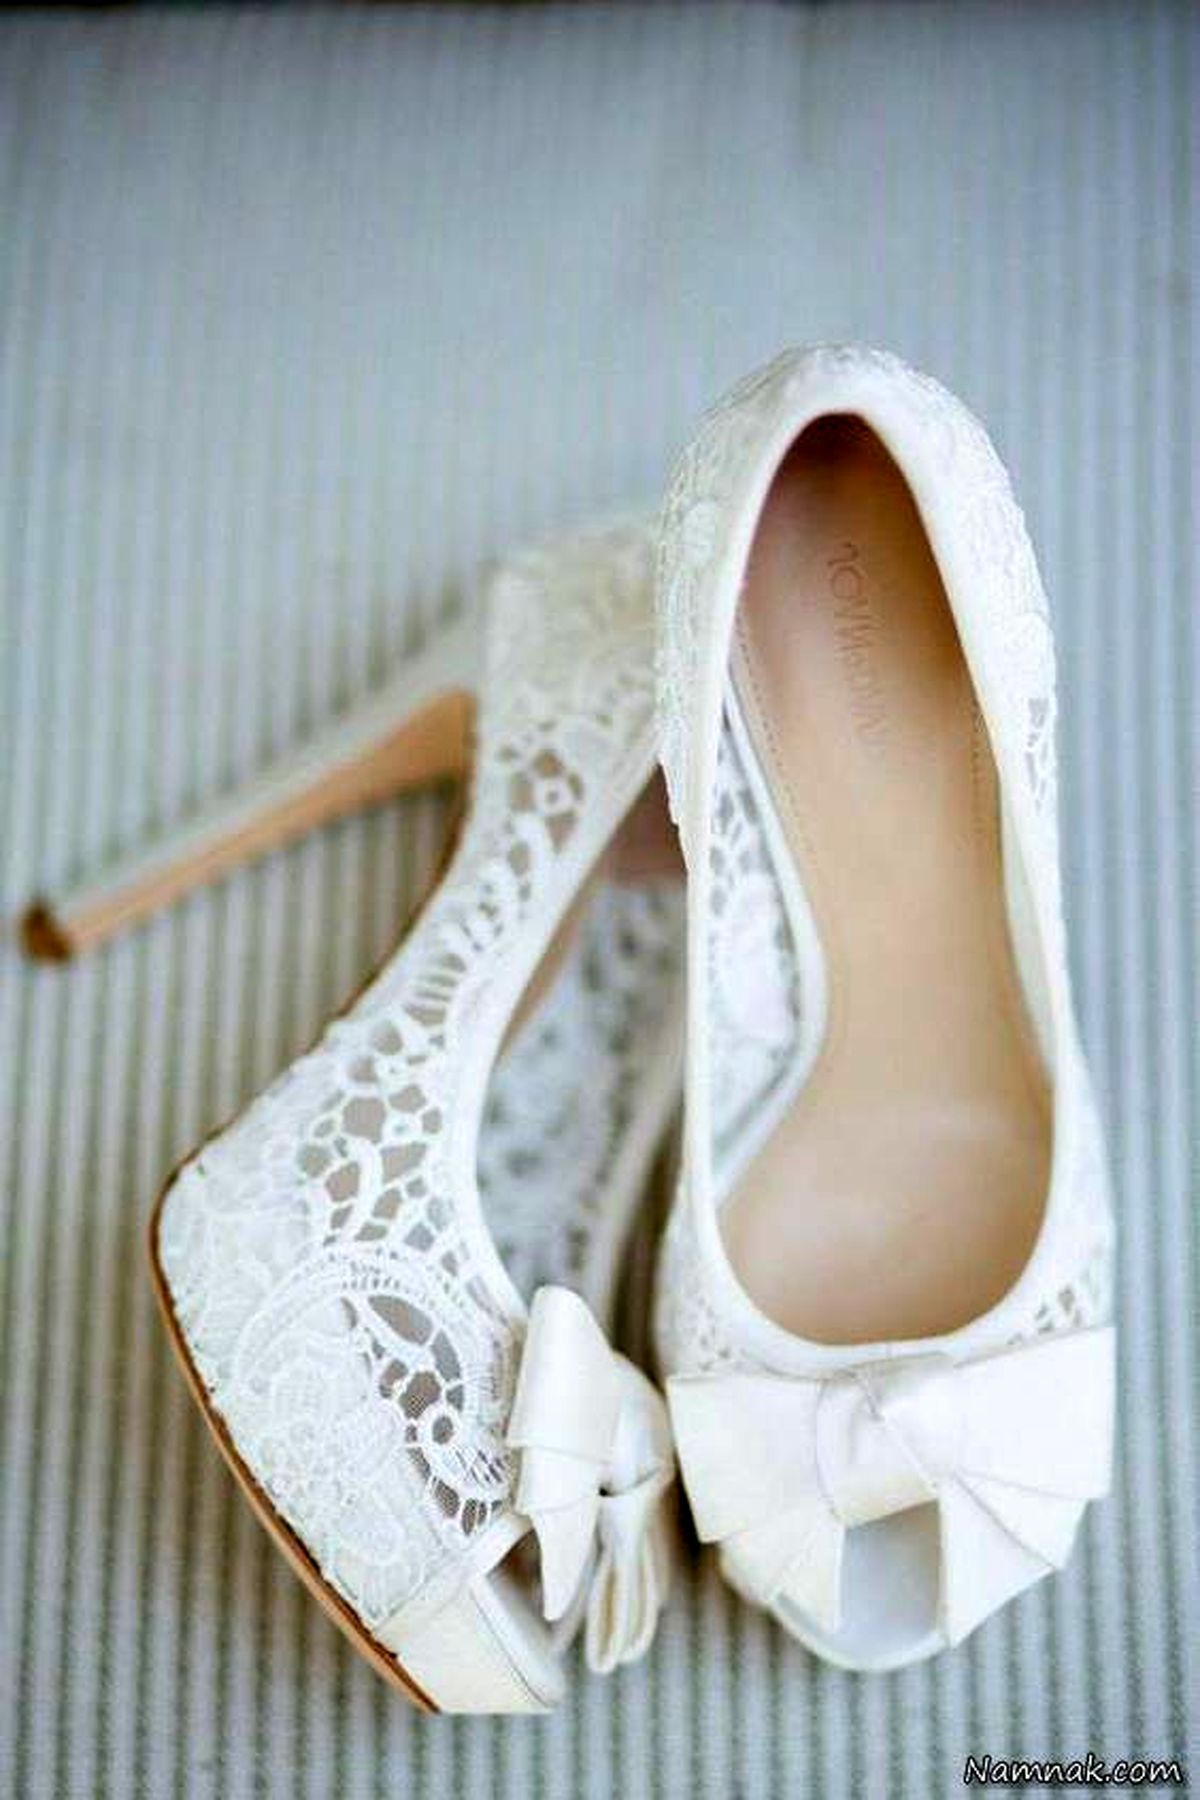 مدل های پرنسسی کفش سفید عروس گیپوری و پاپیونی